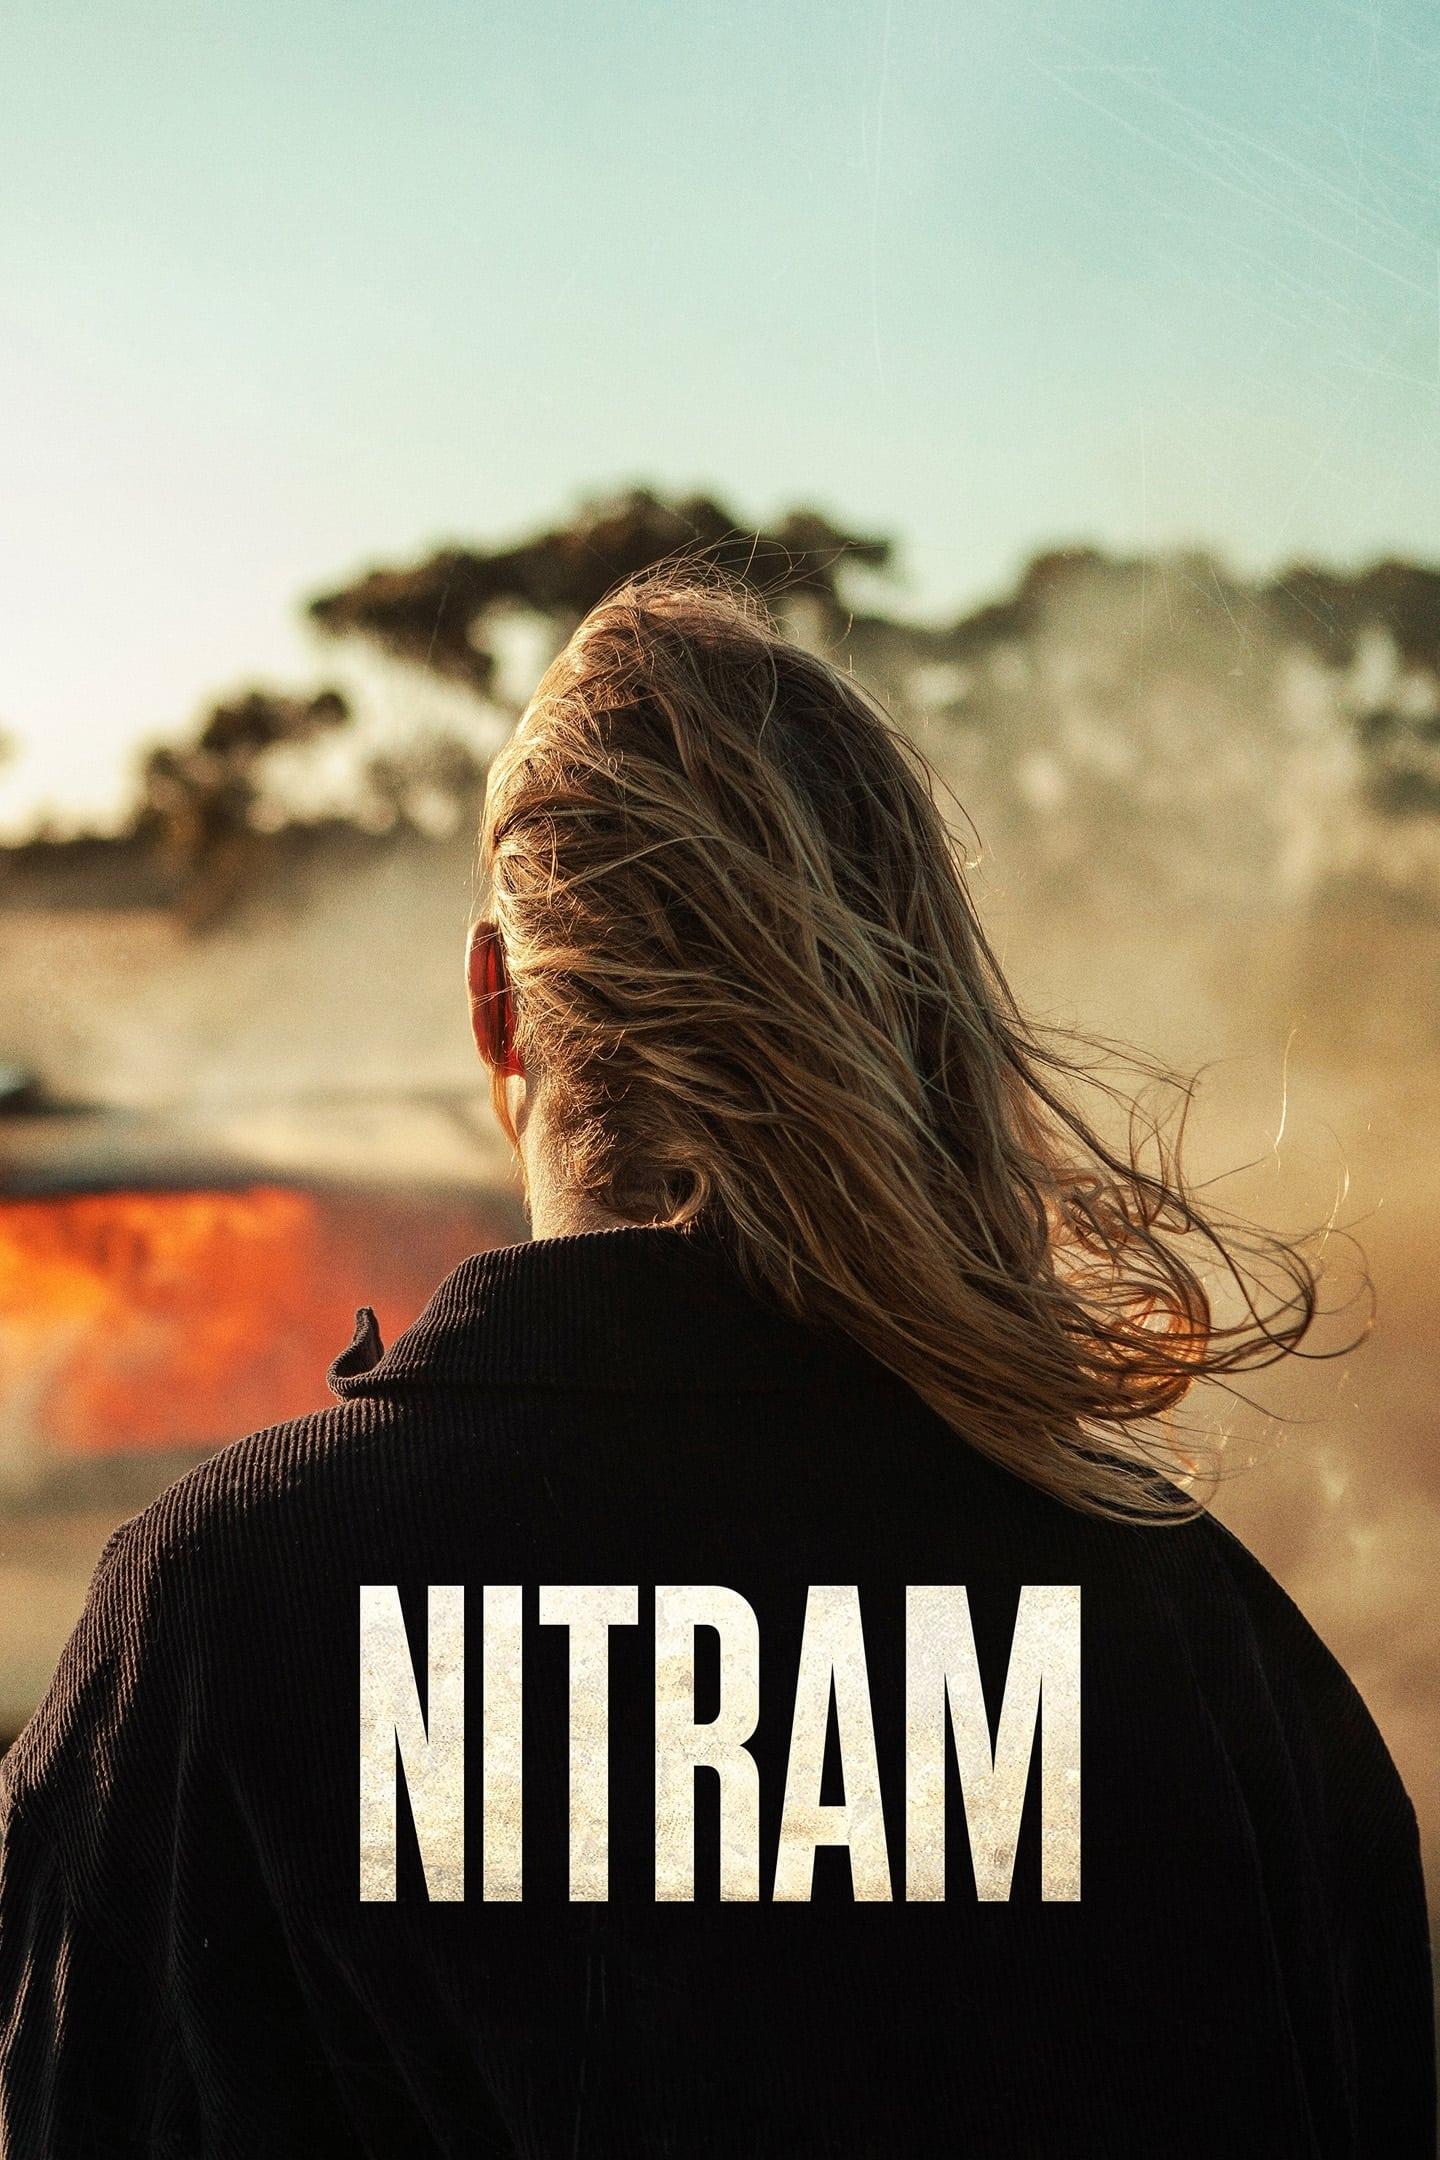 Nitram poster